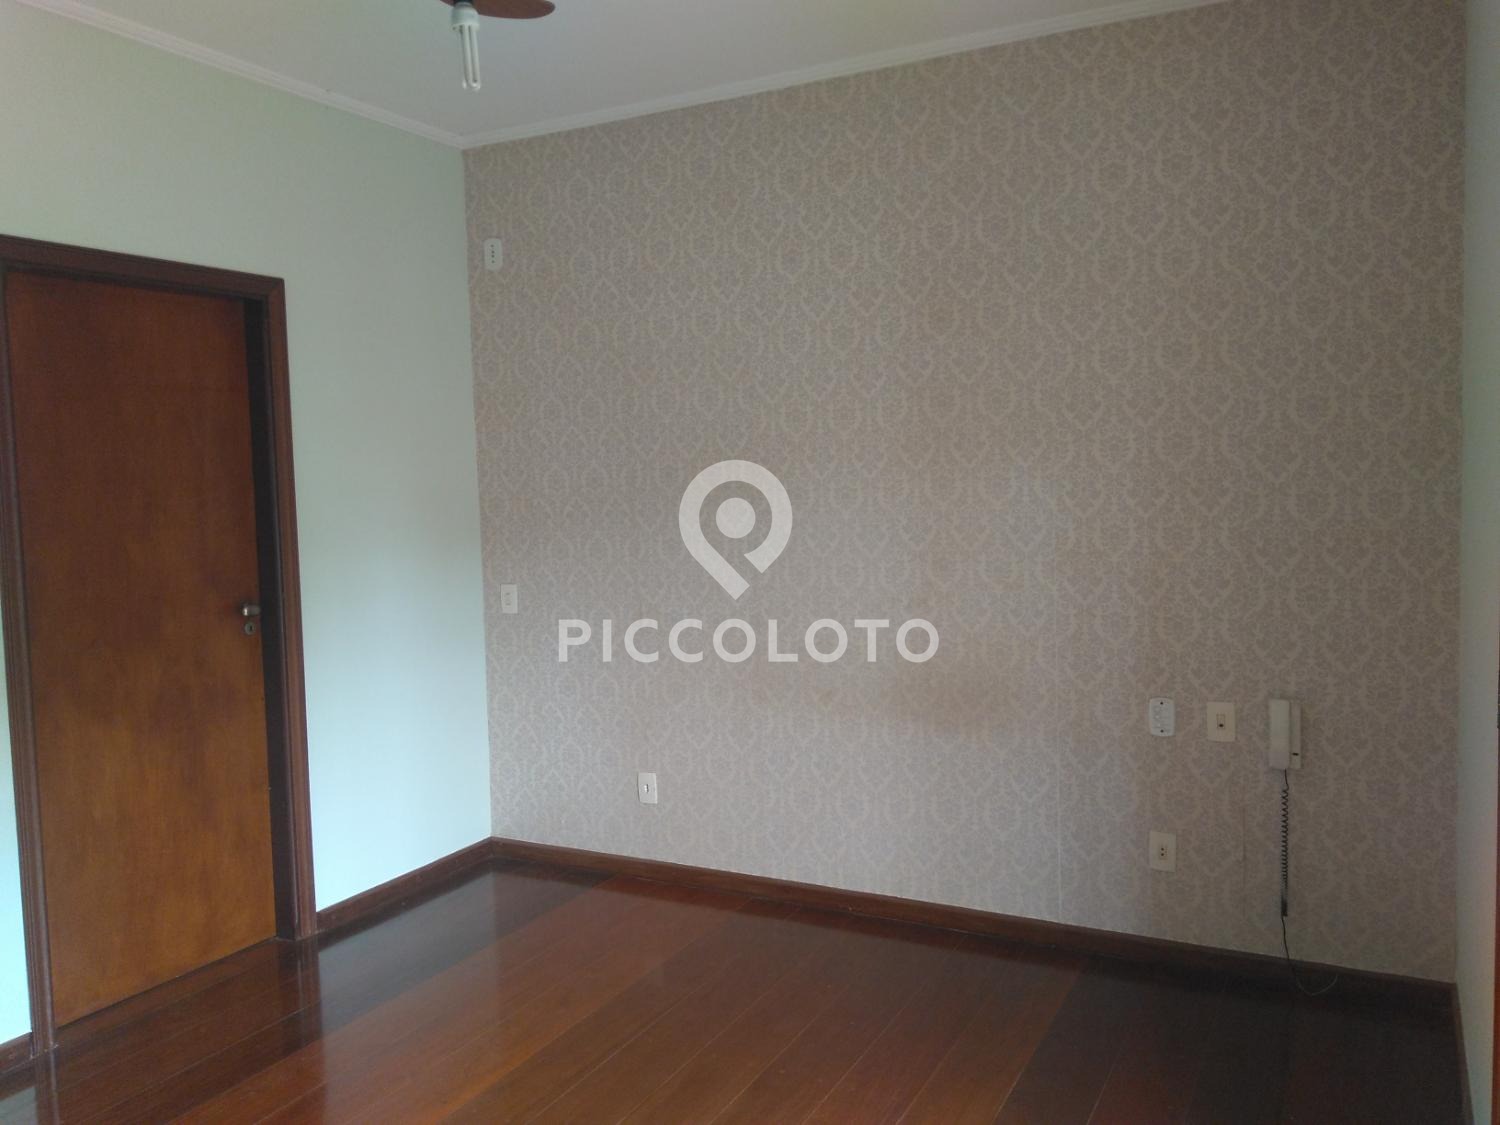 Piccoloto -Casa à venda no Parque das Universidades em Campinas